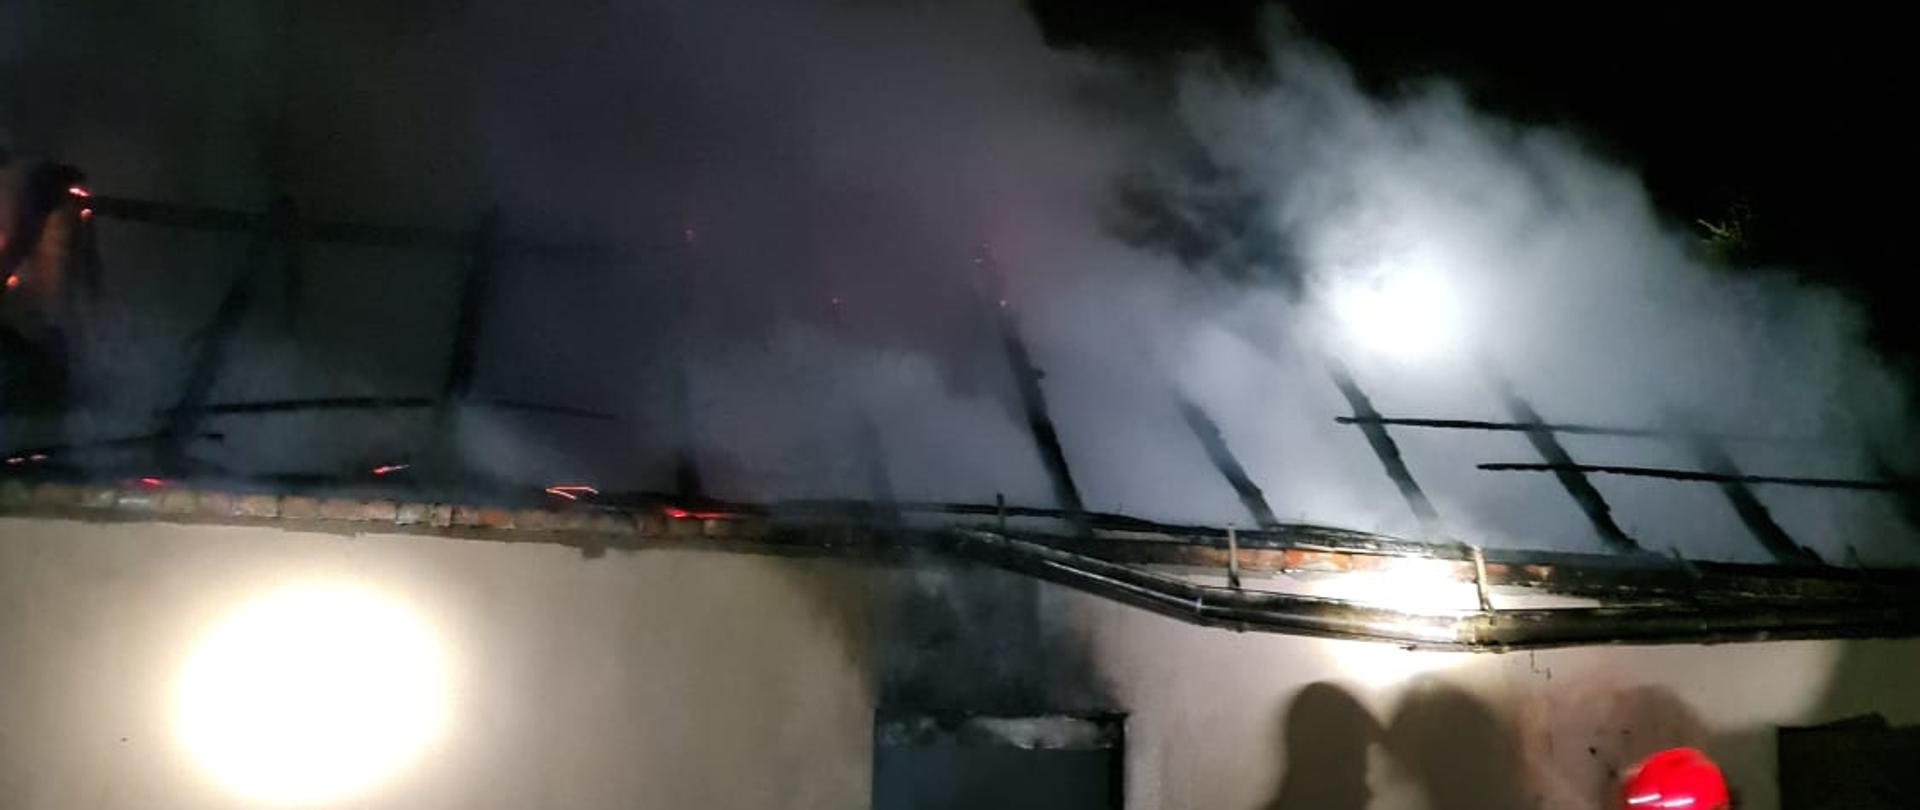 Widać budynek gospodarczy, spalony dach, z konstrukcji dachu wydobywa się dym, jest noc